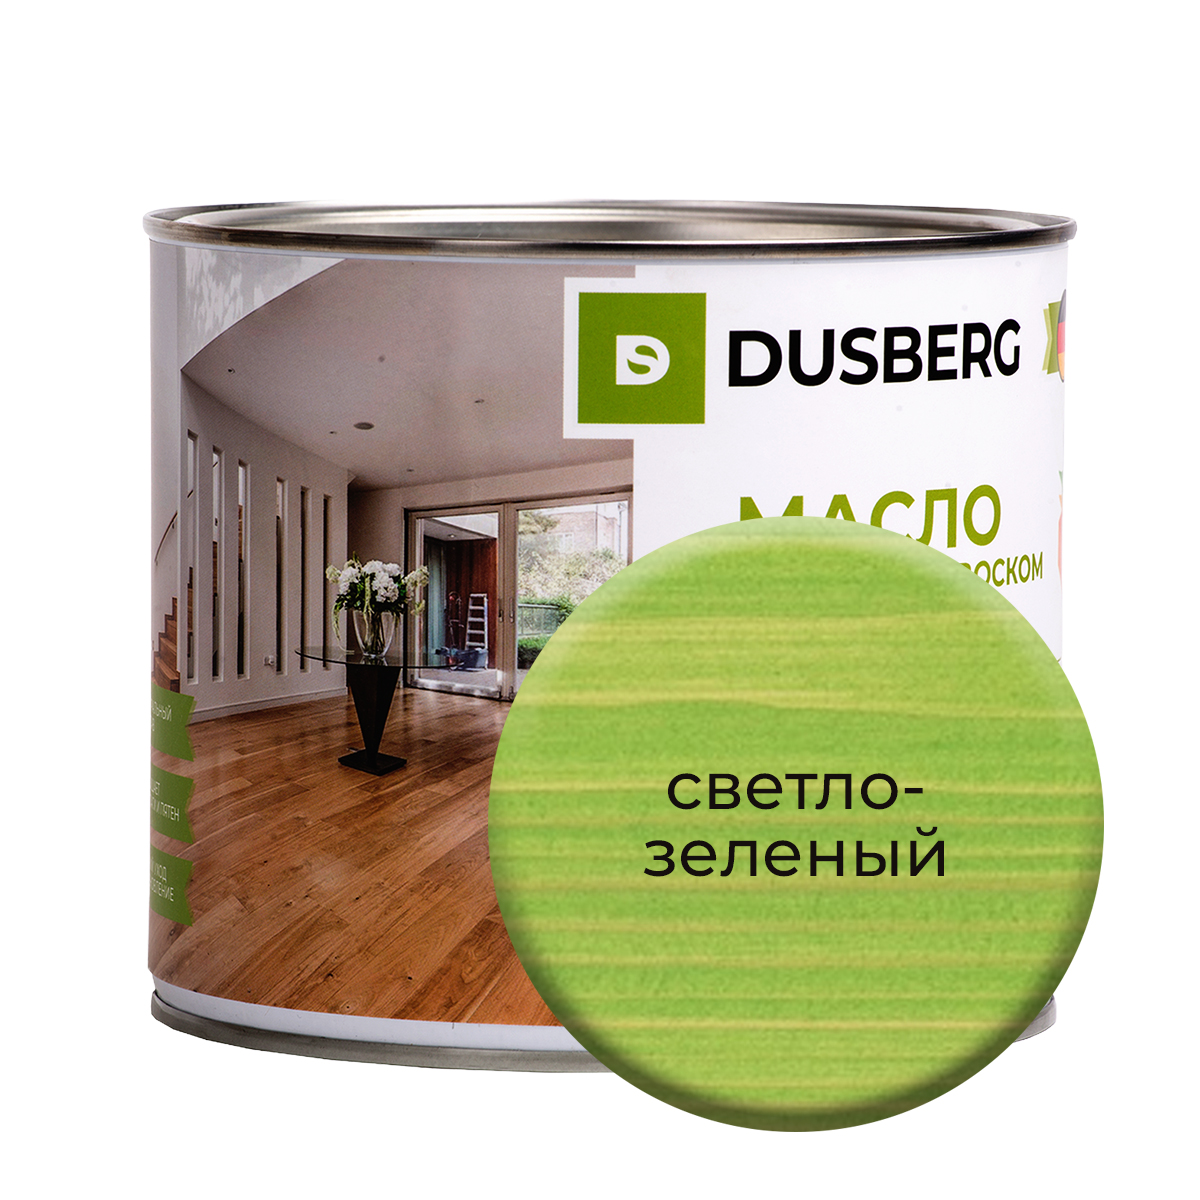 Масло Dusberg с твердым воском на бесцветной основе, 2 л Светло-зеленый масло dusberg с твердым воском на бесцветной основе 750 мл темный серо зеленый